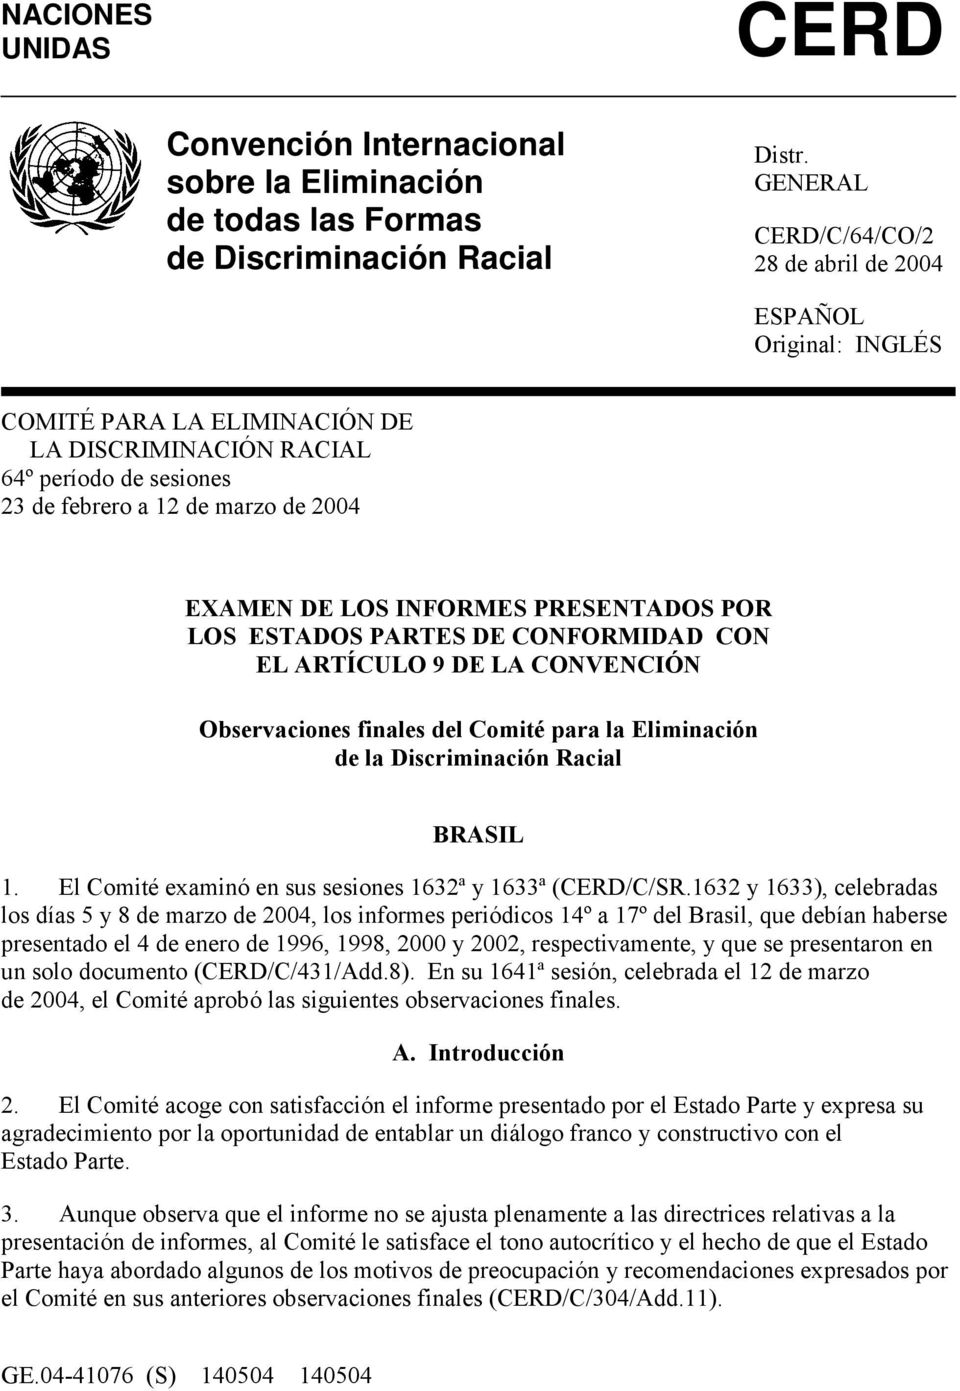 INFORMES PRESENTADOS POR LOS ESTADOS PARTES DE CONFORMIDAD CON EL ARTÍCULO 9 DE LA CONVENCIÓN Observaciones finales del Comité para la Eliminación de la Discriminación Racial BRASIL 1.